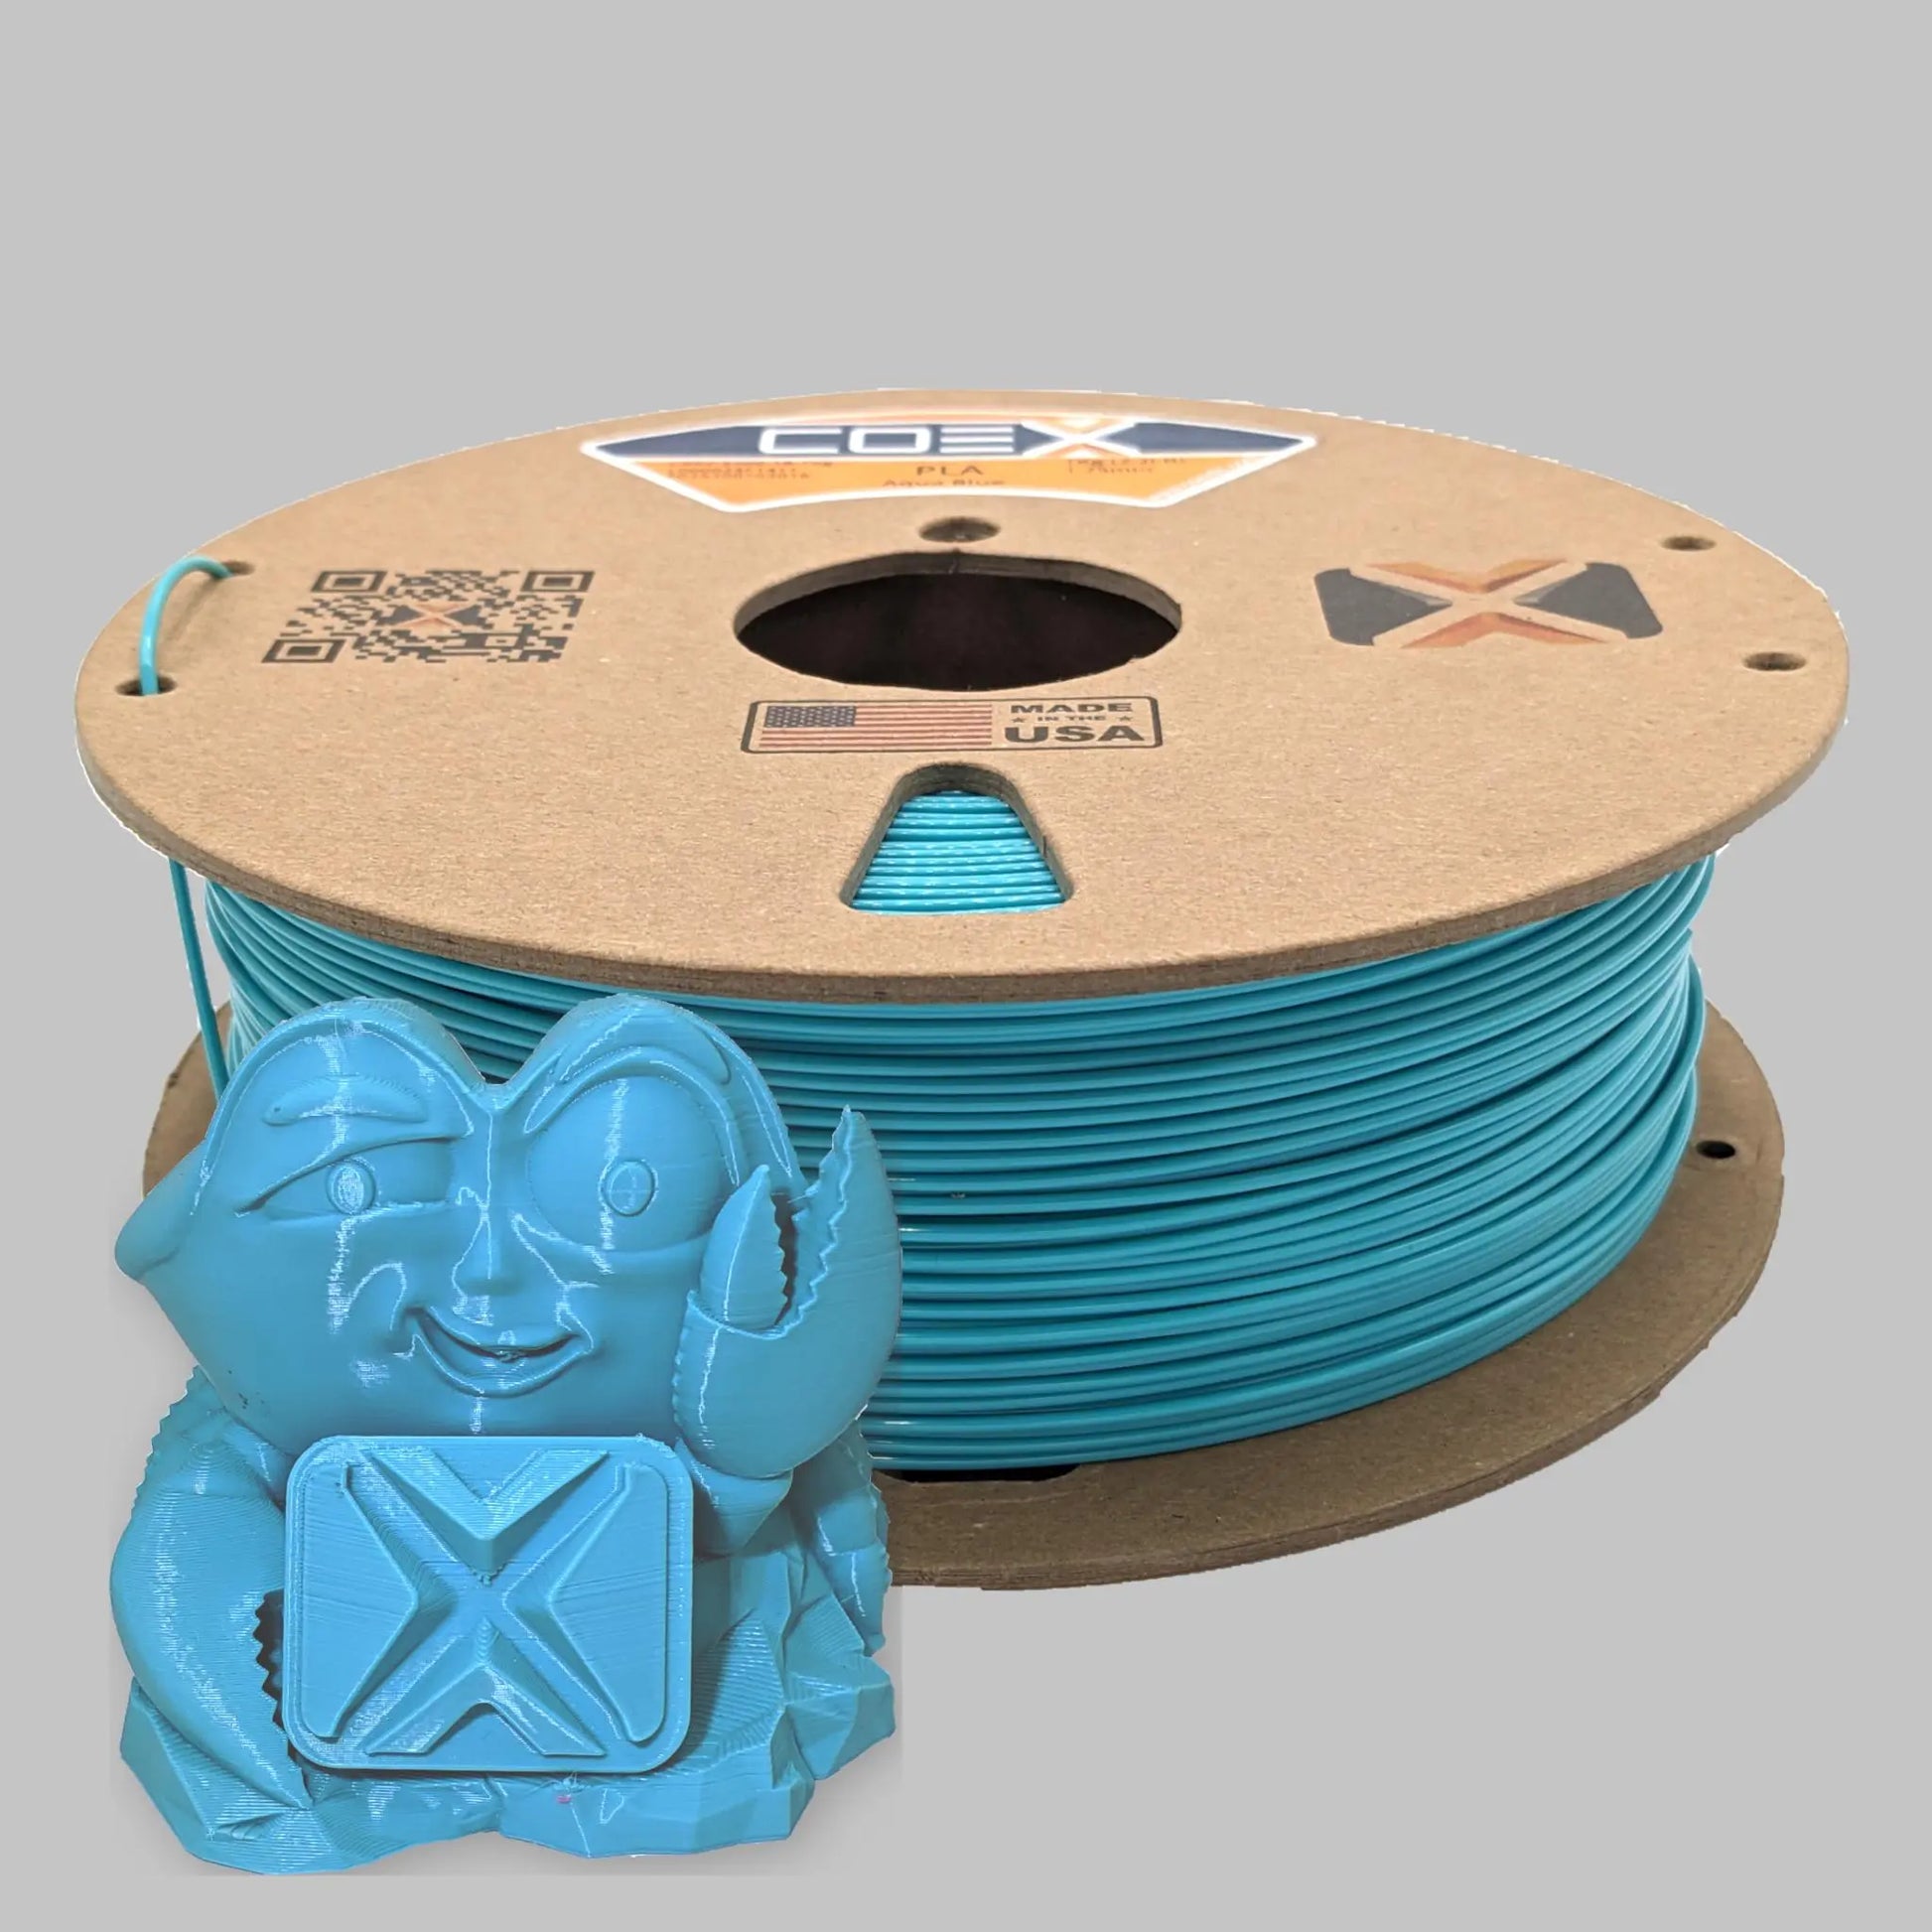 Cobalt Blue PETG - COEX 3D